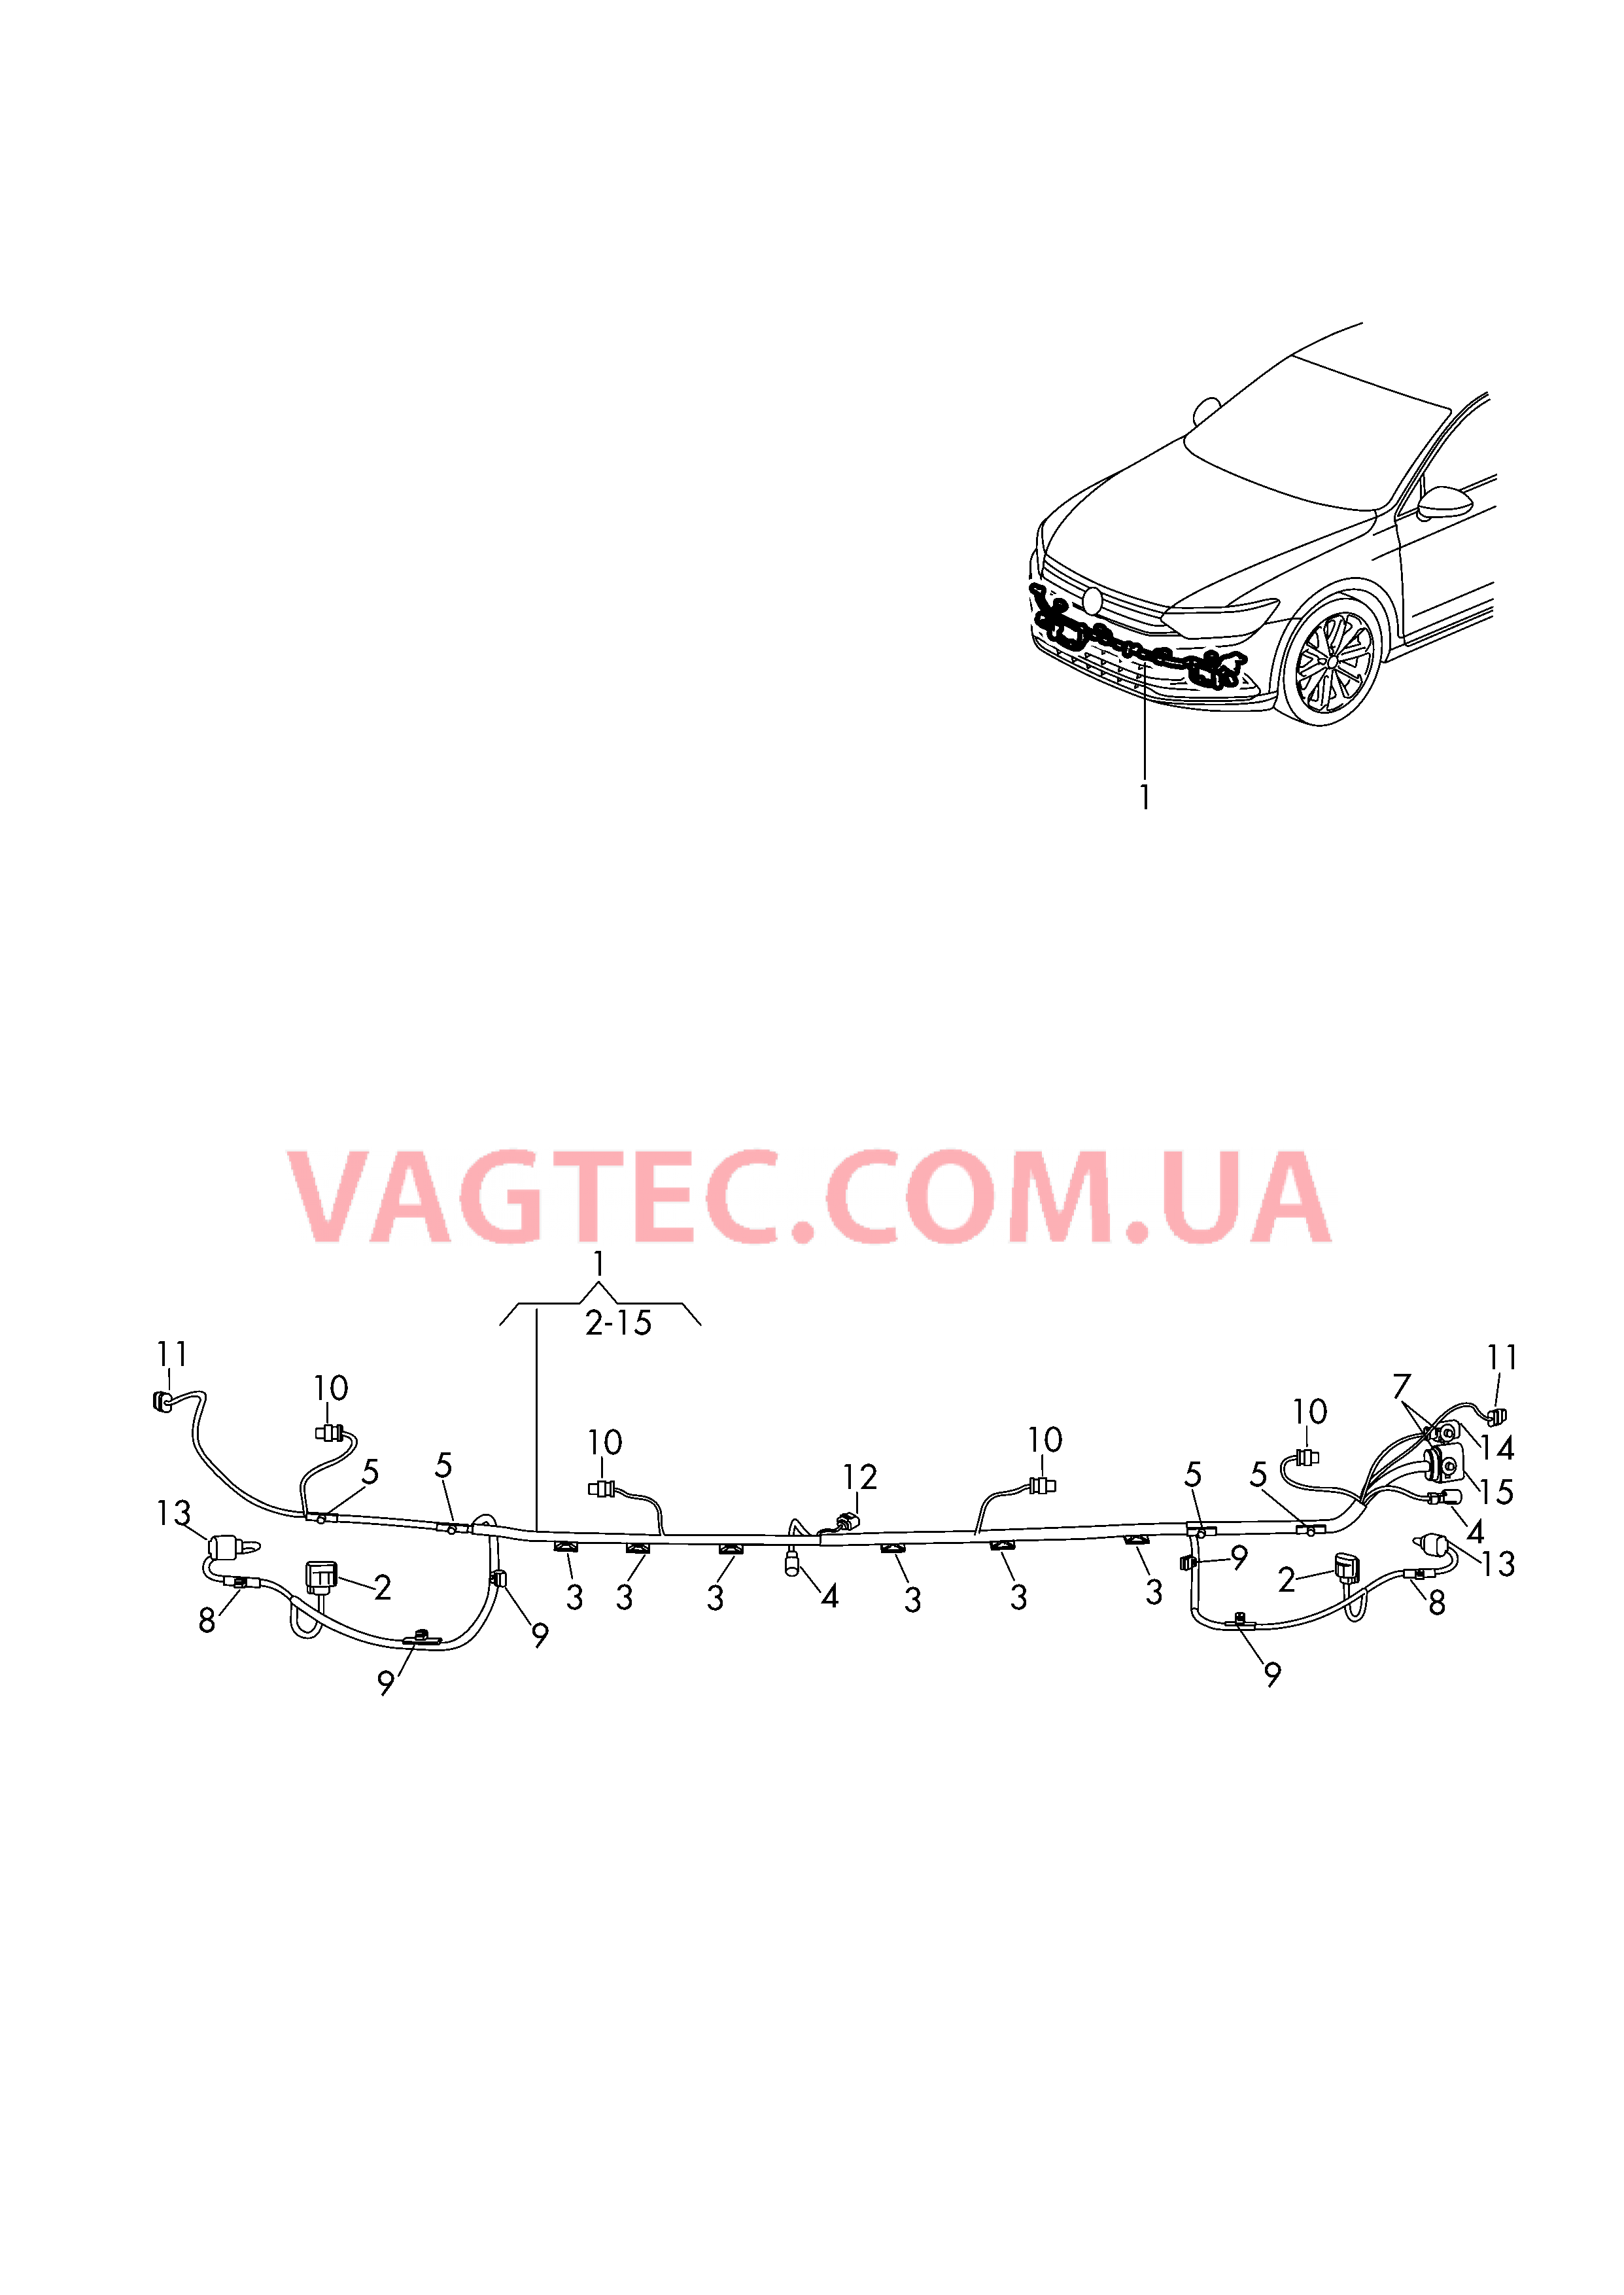 Жгут проводов для бампера  для VOLKSWAGEN Passat 2015-2